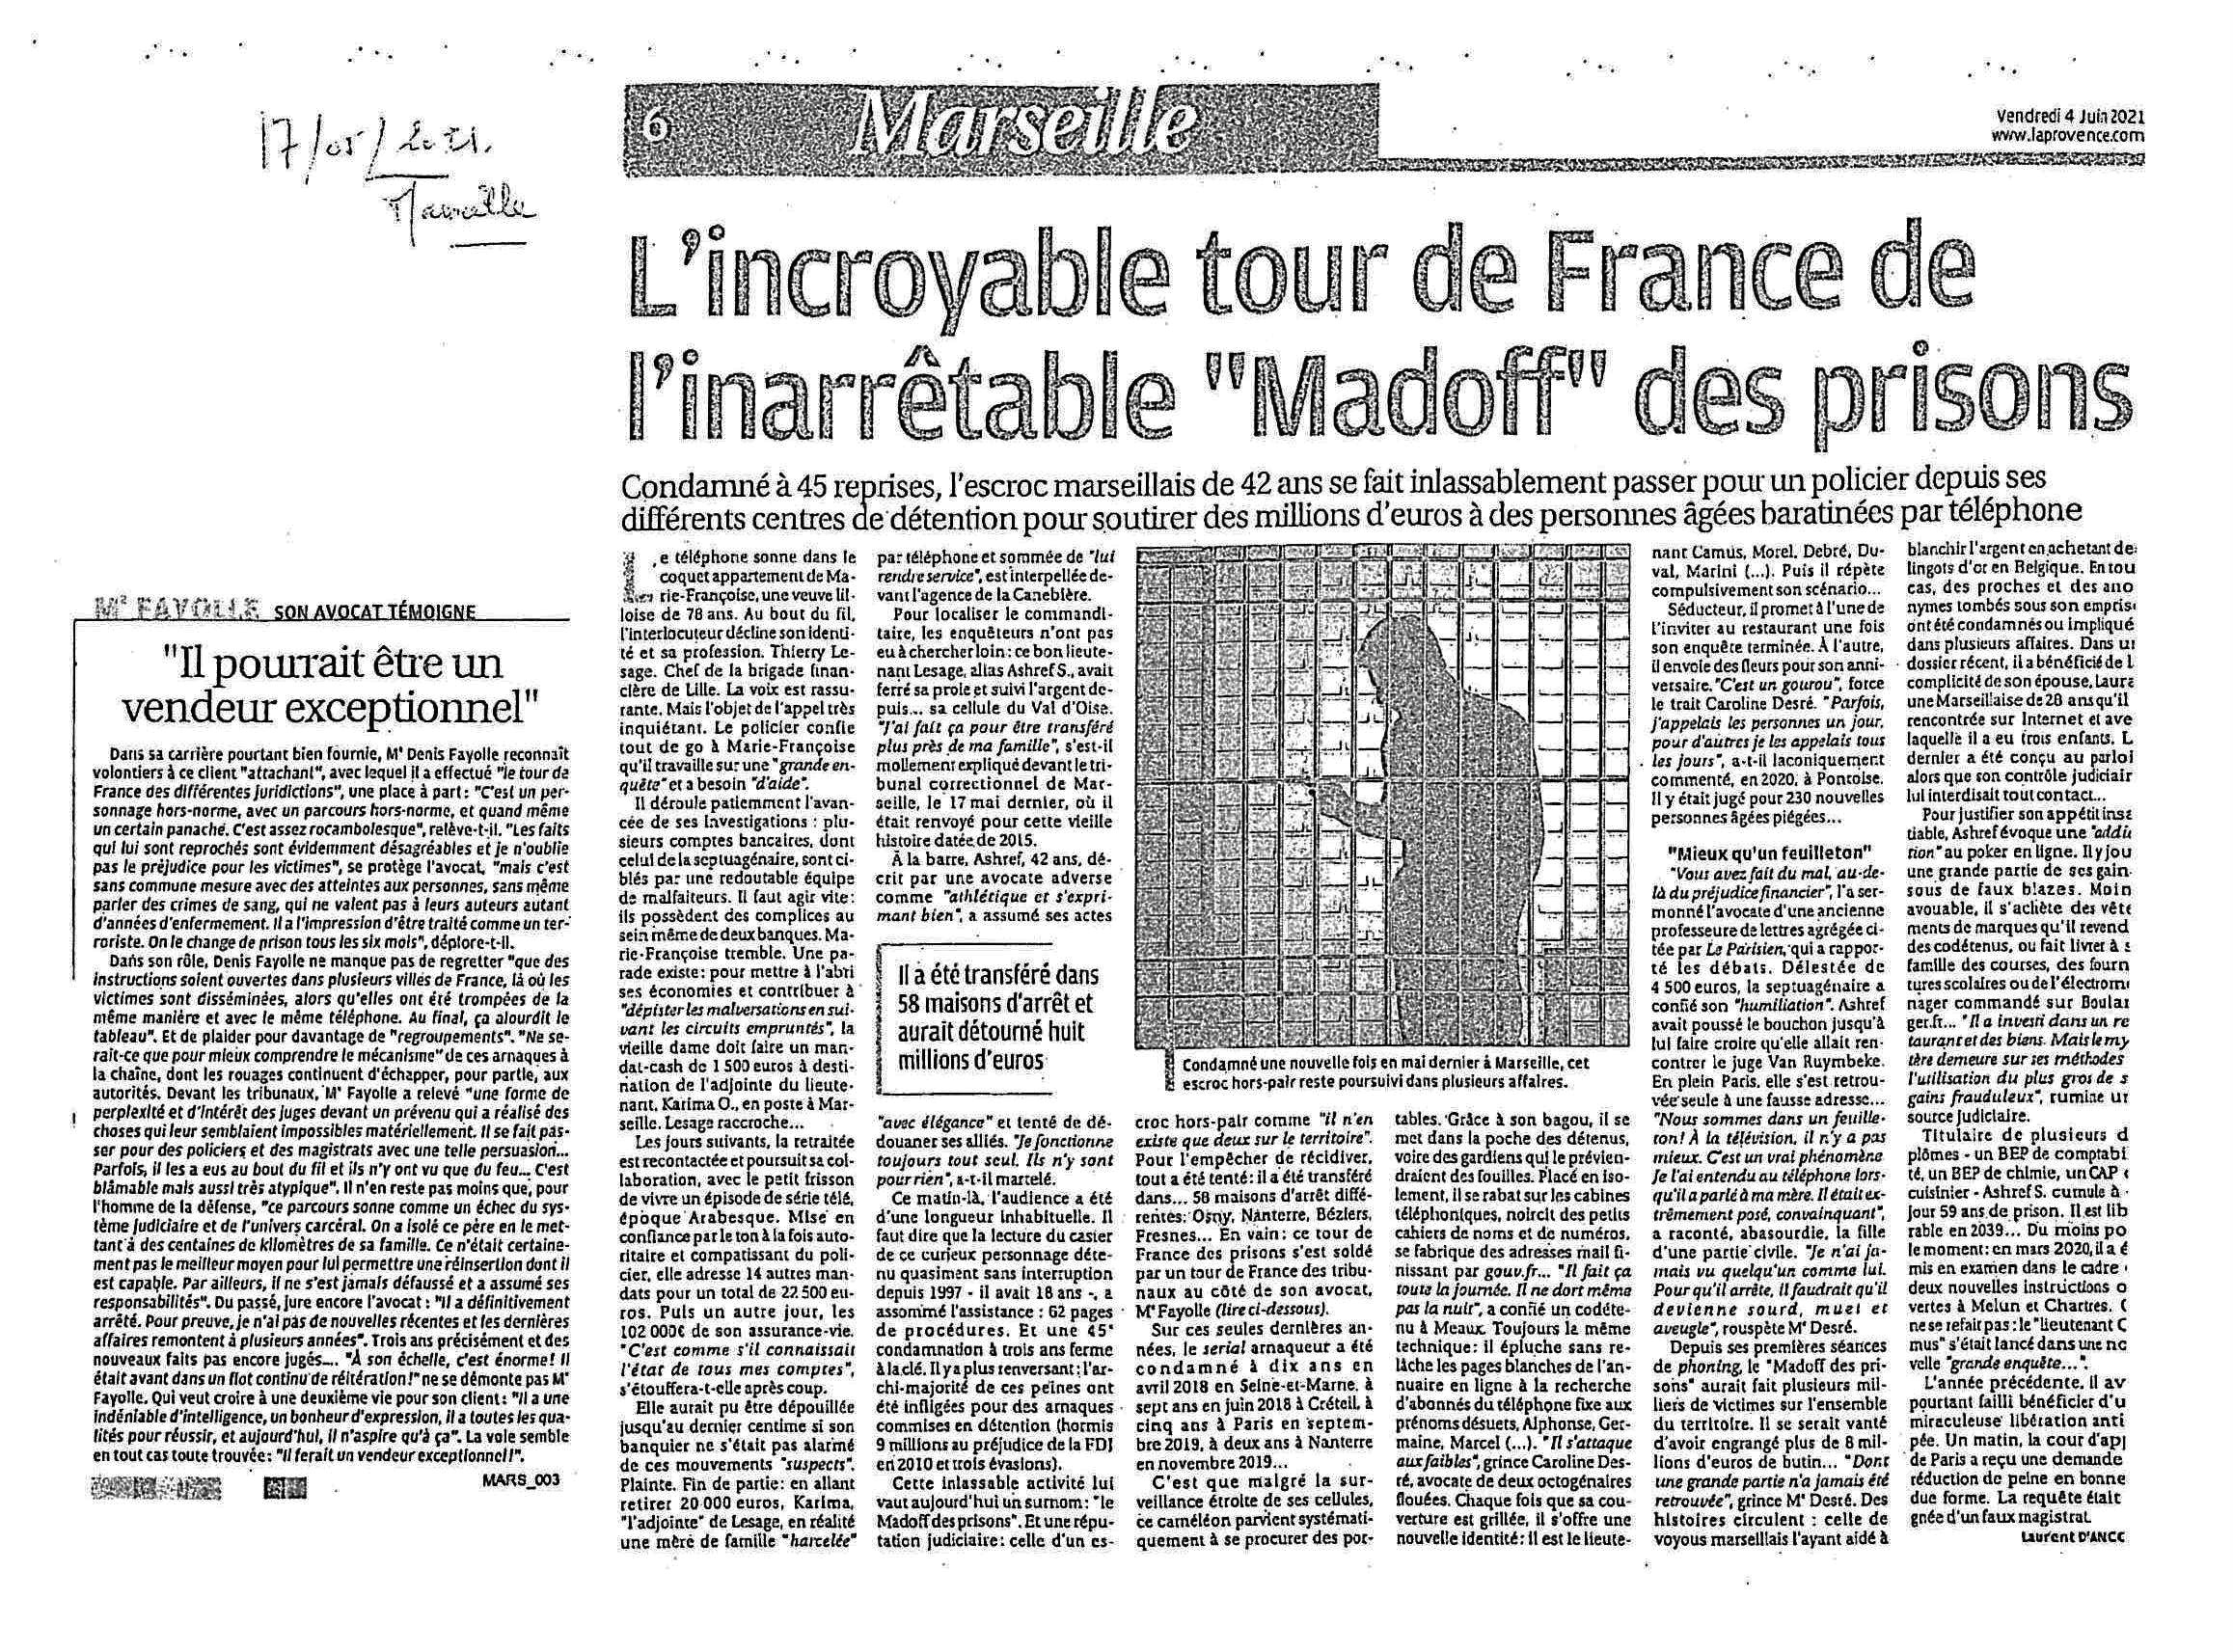 La Provence - TRIBUNAL CORRECTIONNEL DE MARSEILLE - AFFAIRE D’ESCROQUERIE ET USURPATION IDENTITE